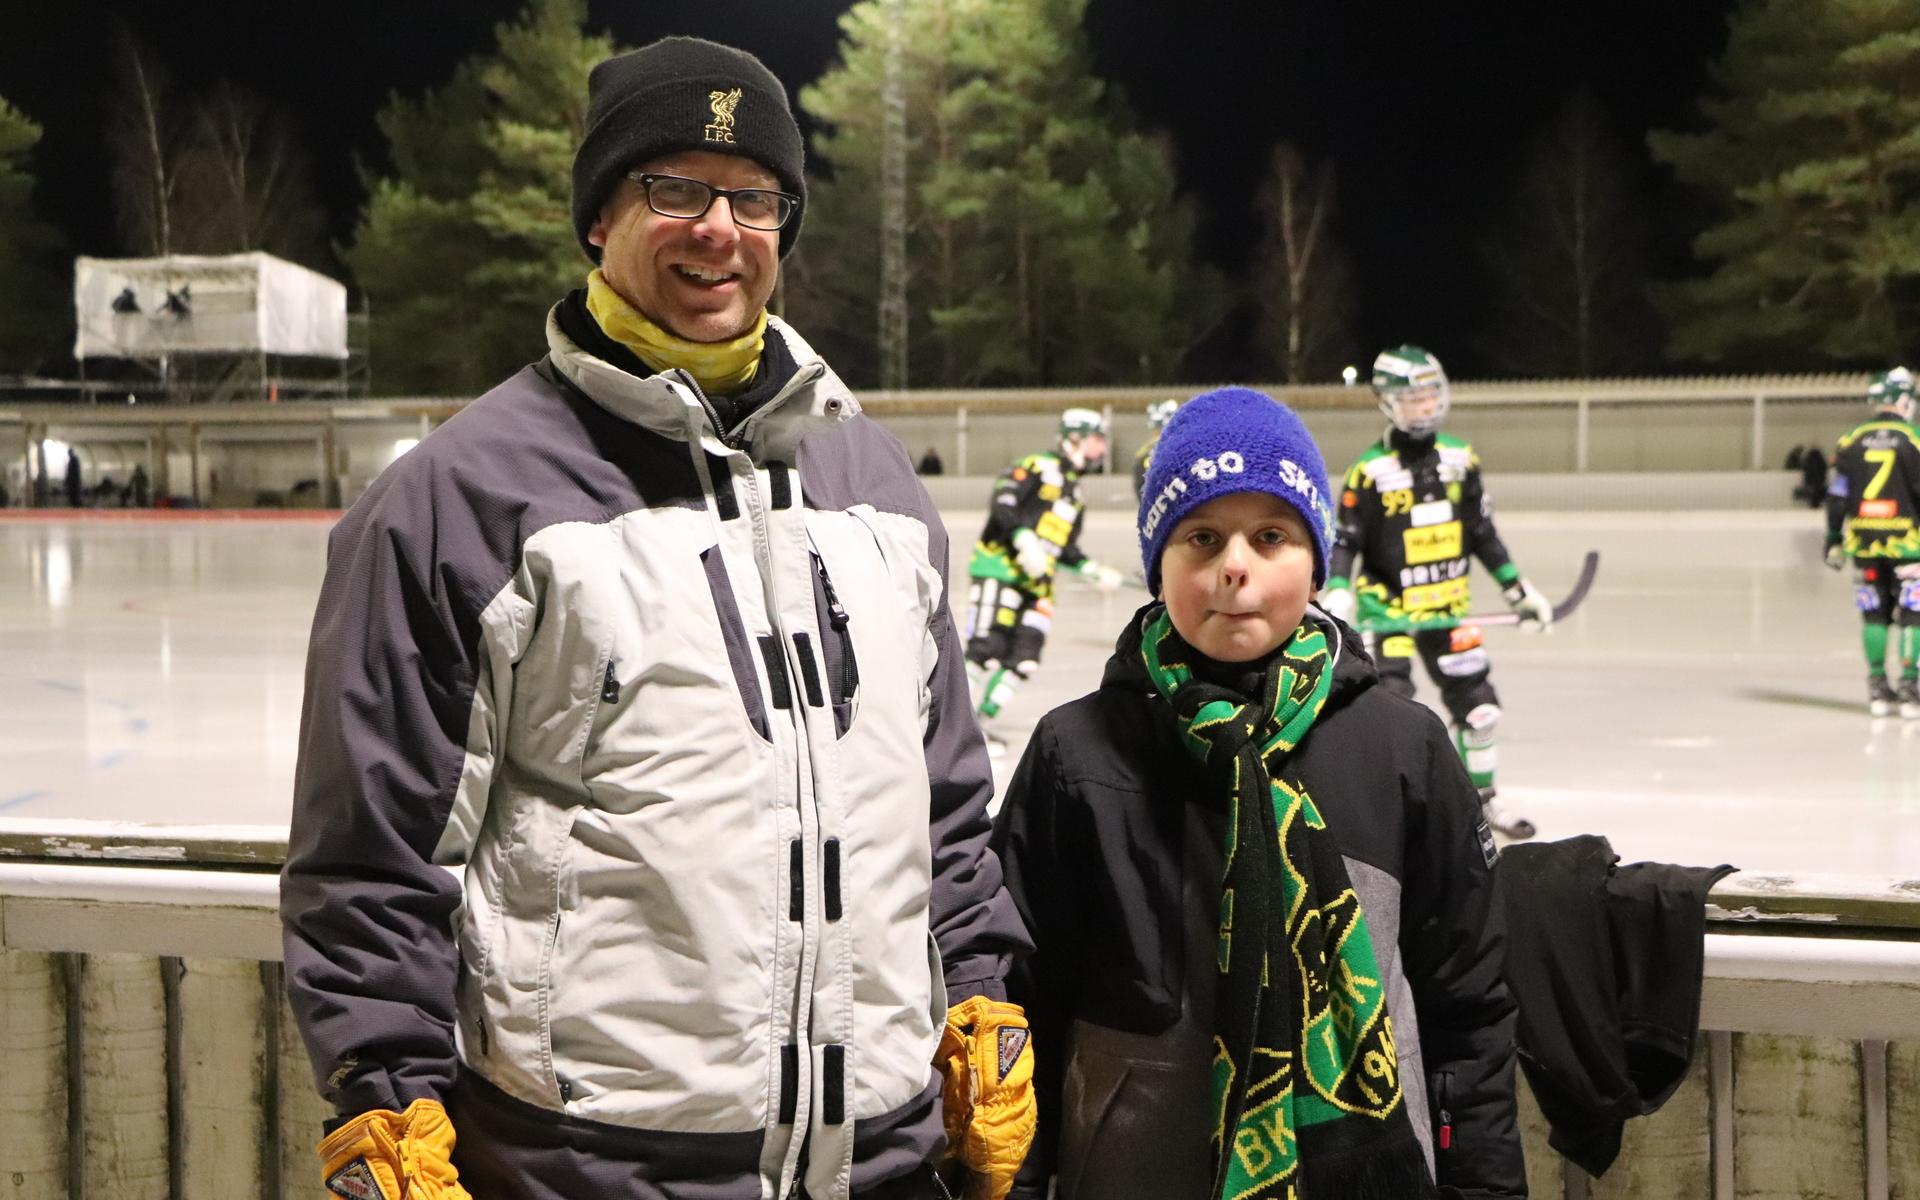 Thorleif och Edvin Olausson bor i Frillesås och kollar på nästan alla matcher som FBK spelar på hemmaplan.